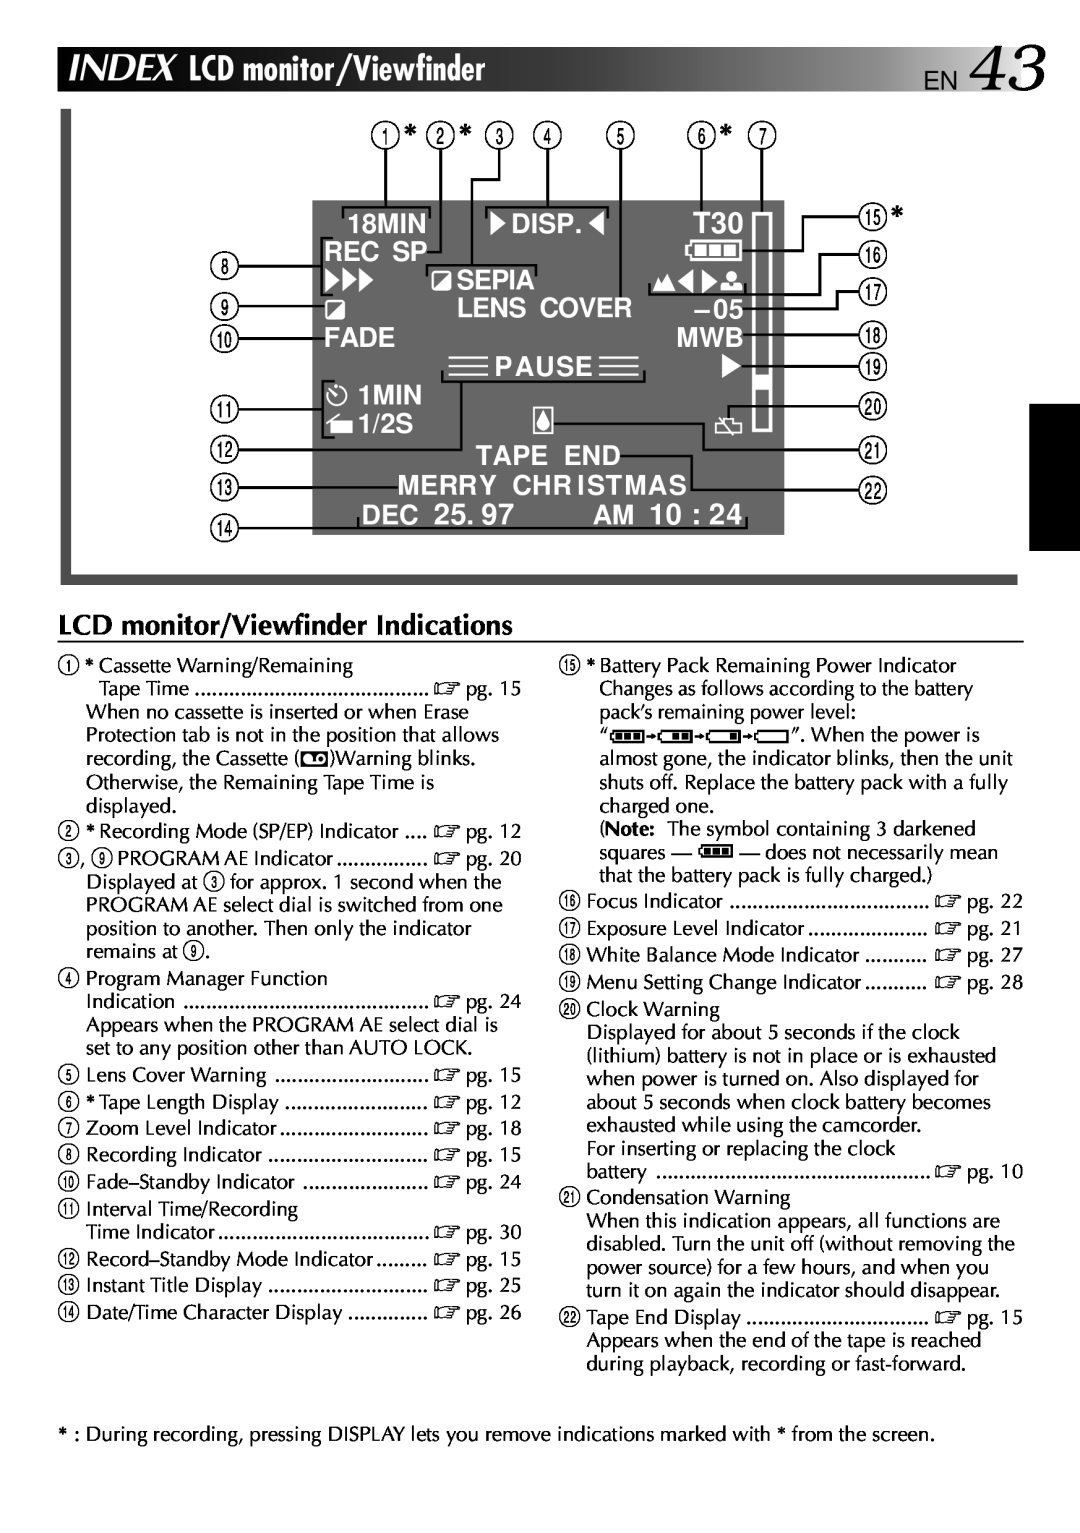 JVC GR-AXM22UM INDEX LCD monitor/Viewfinder EN, 1* 2* 3 4 5 6, @ # $, AM 10, LCD monitor/Viewfinder Indications, 18MIN 